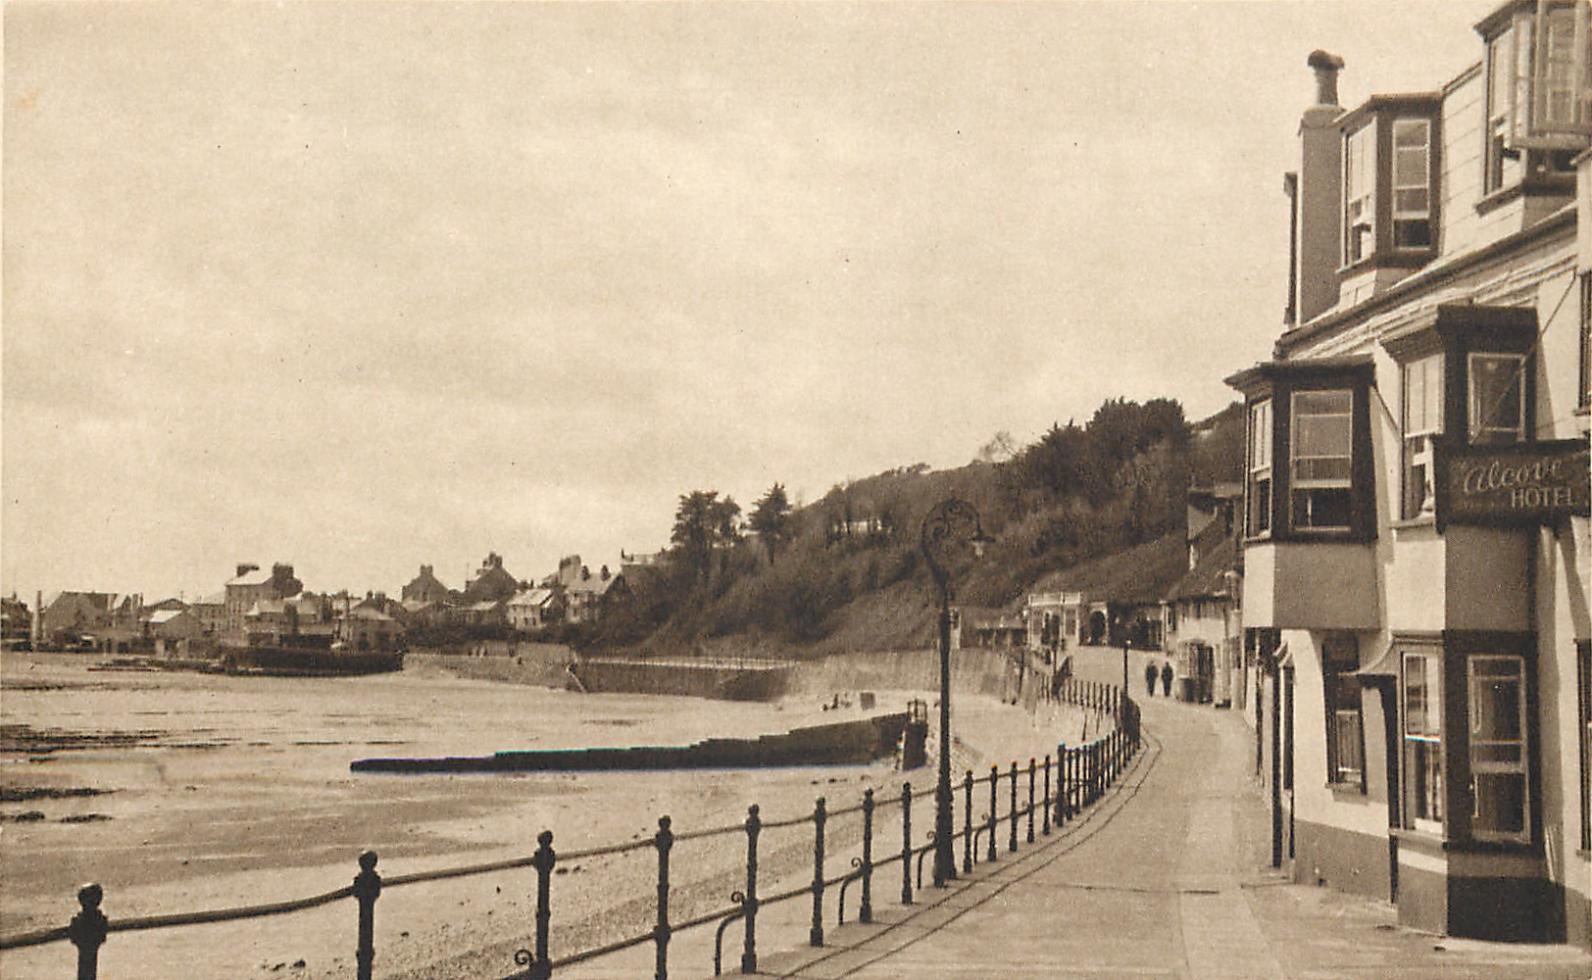 The Alcove Hotel, Marine Parade, Lyme Regis circa 1937